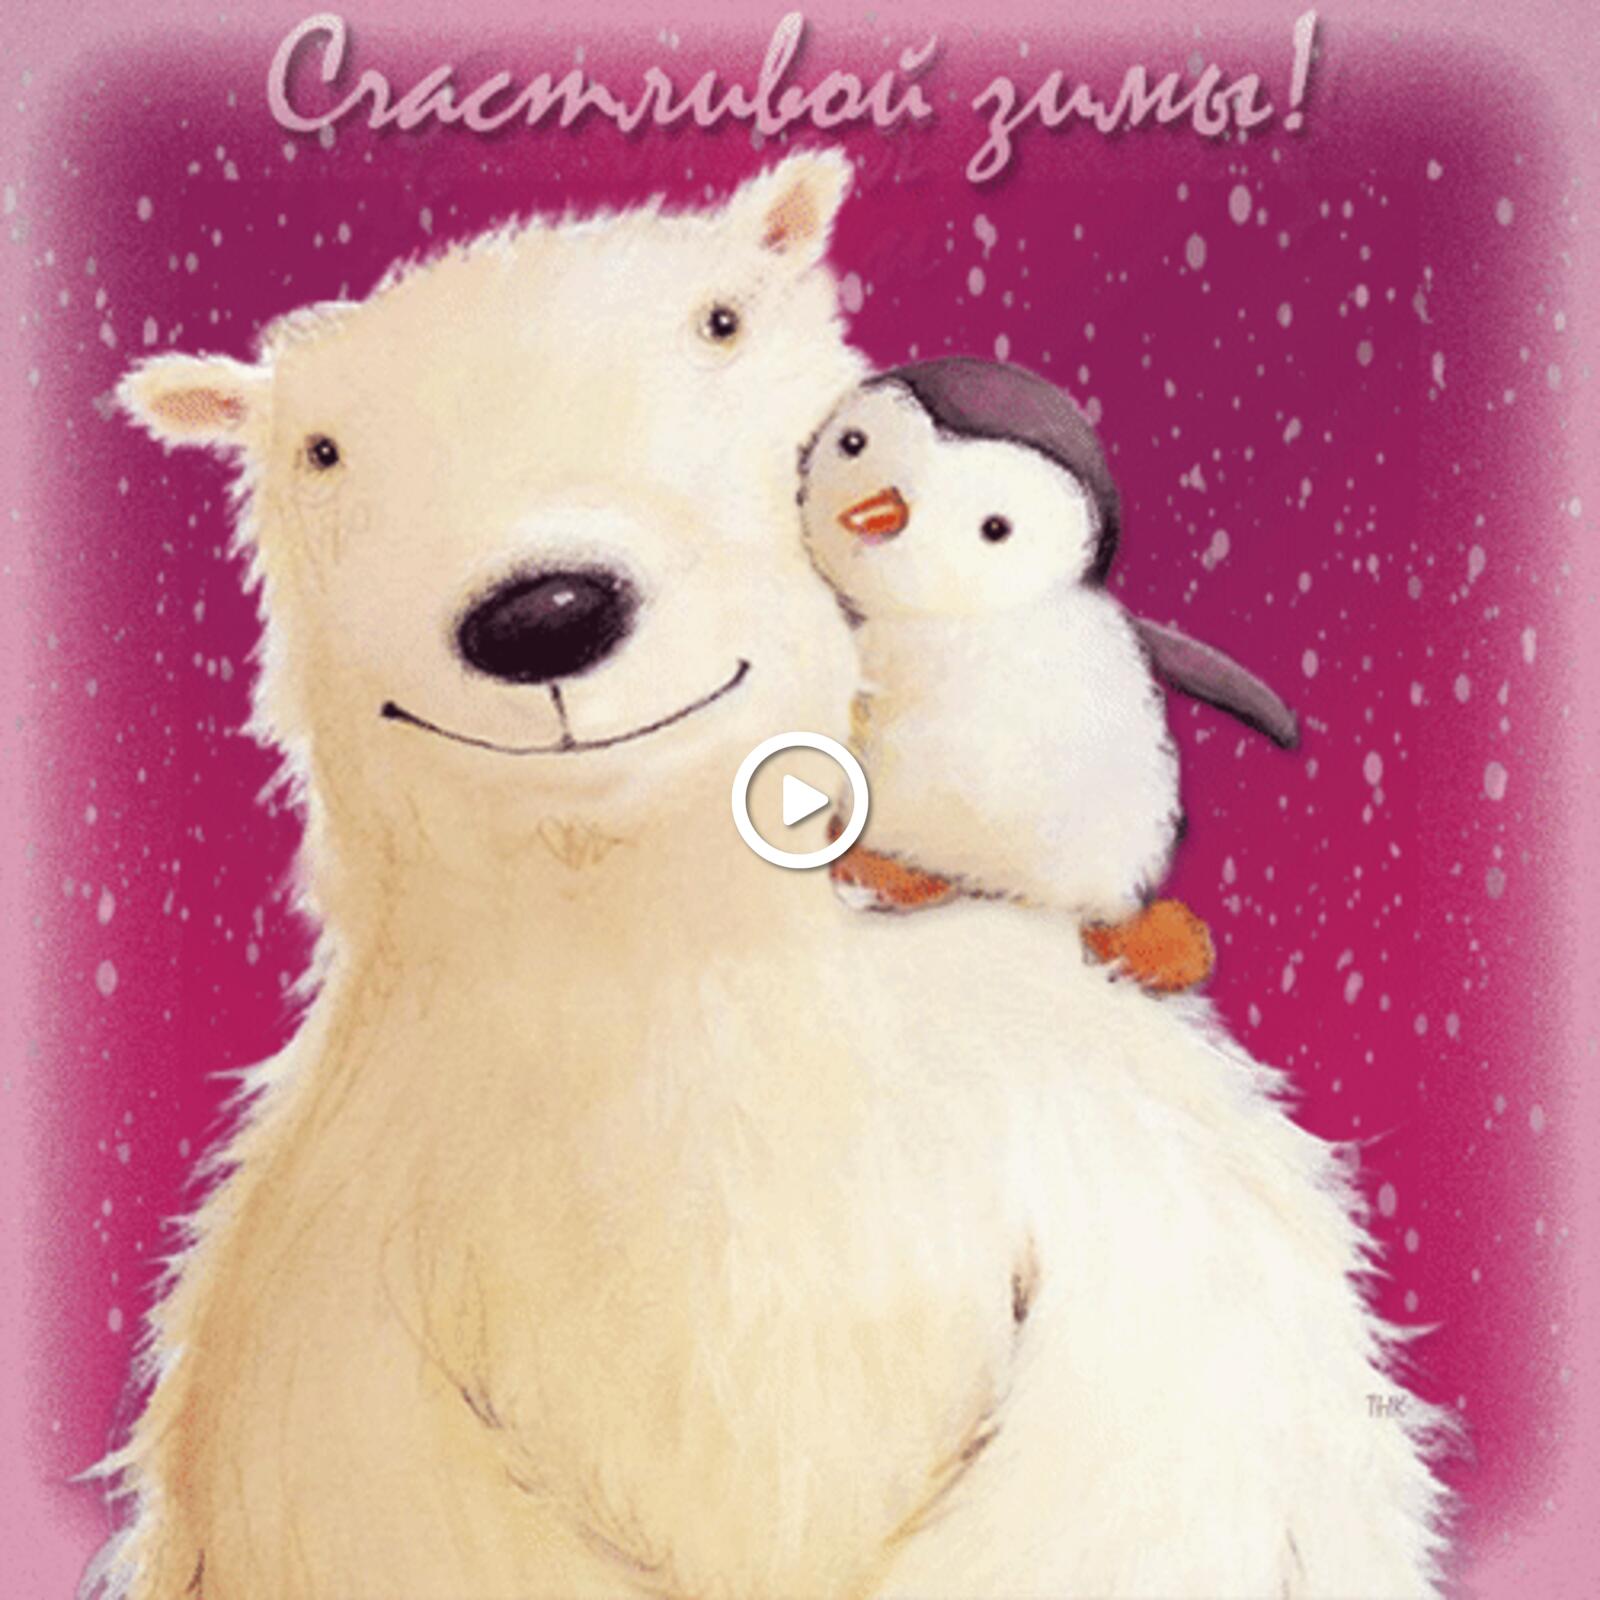 一张以快乐的冬天 背负 企鹅为主题的明信片